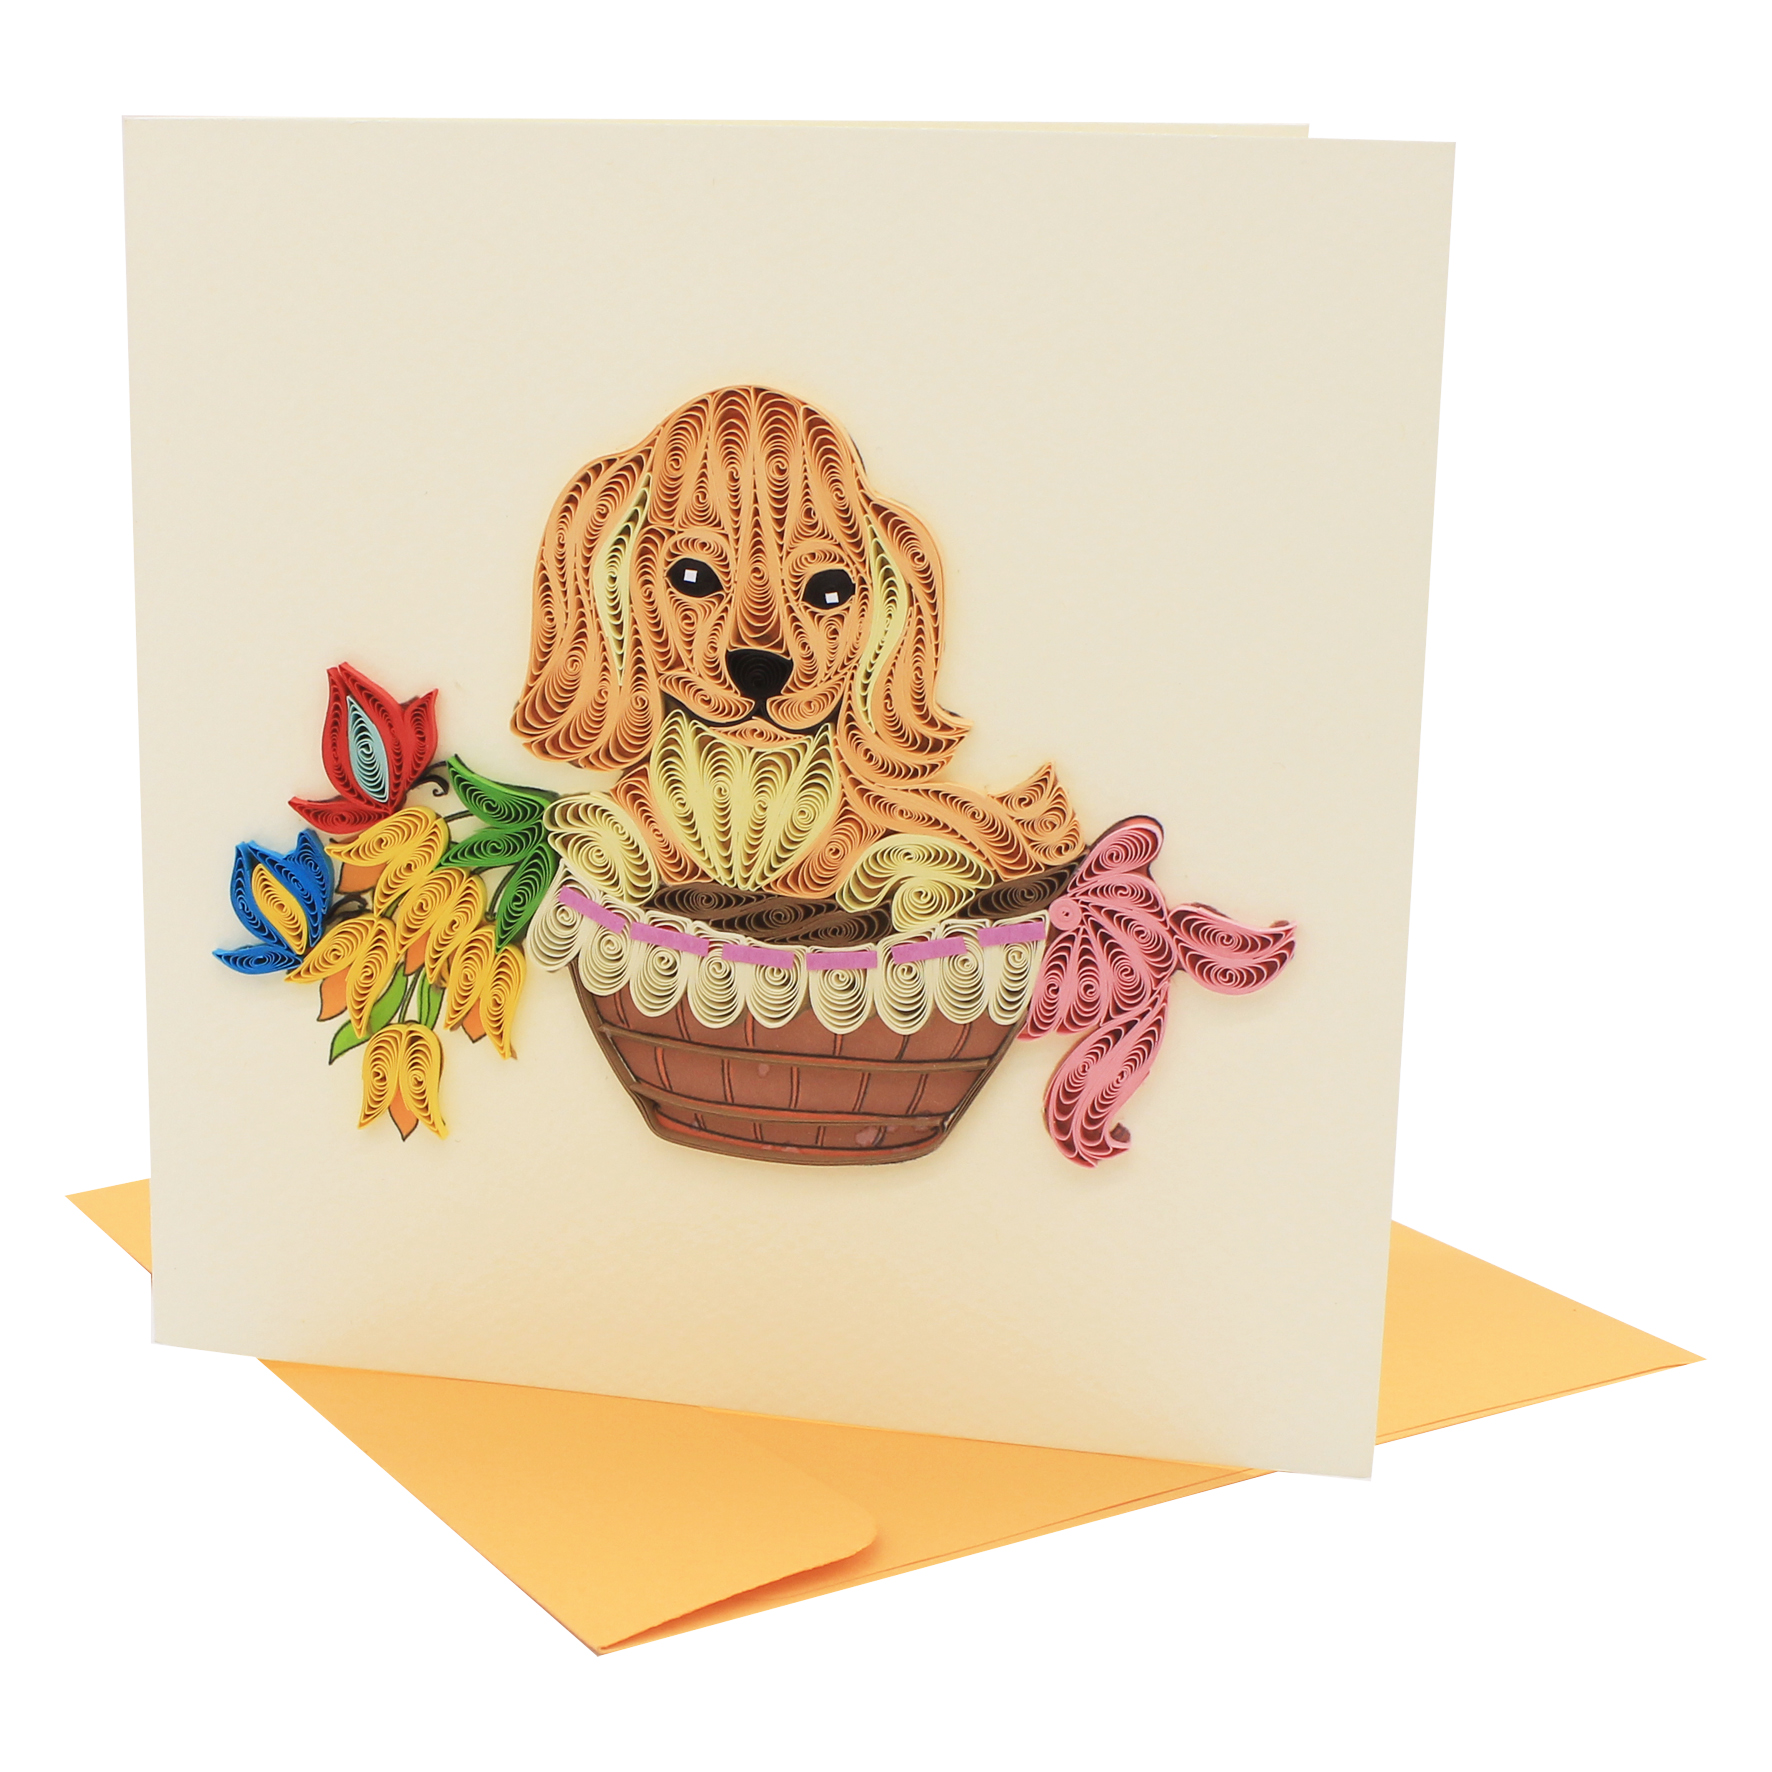 Thiệp Handmade - Thiệp Cún cưng nghệ thuật giấy xoắn (Quilling Card) - Tặng Kèm Khung Giấy Để Bàn - Thiệp chúc mừng sinh nhật, kỷ niệm, tình yêu, cảm ơn...